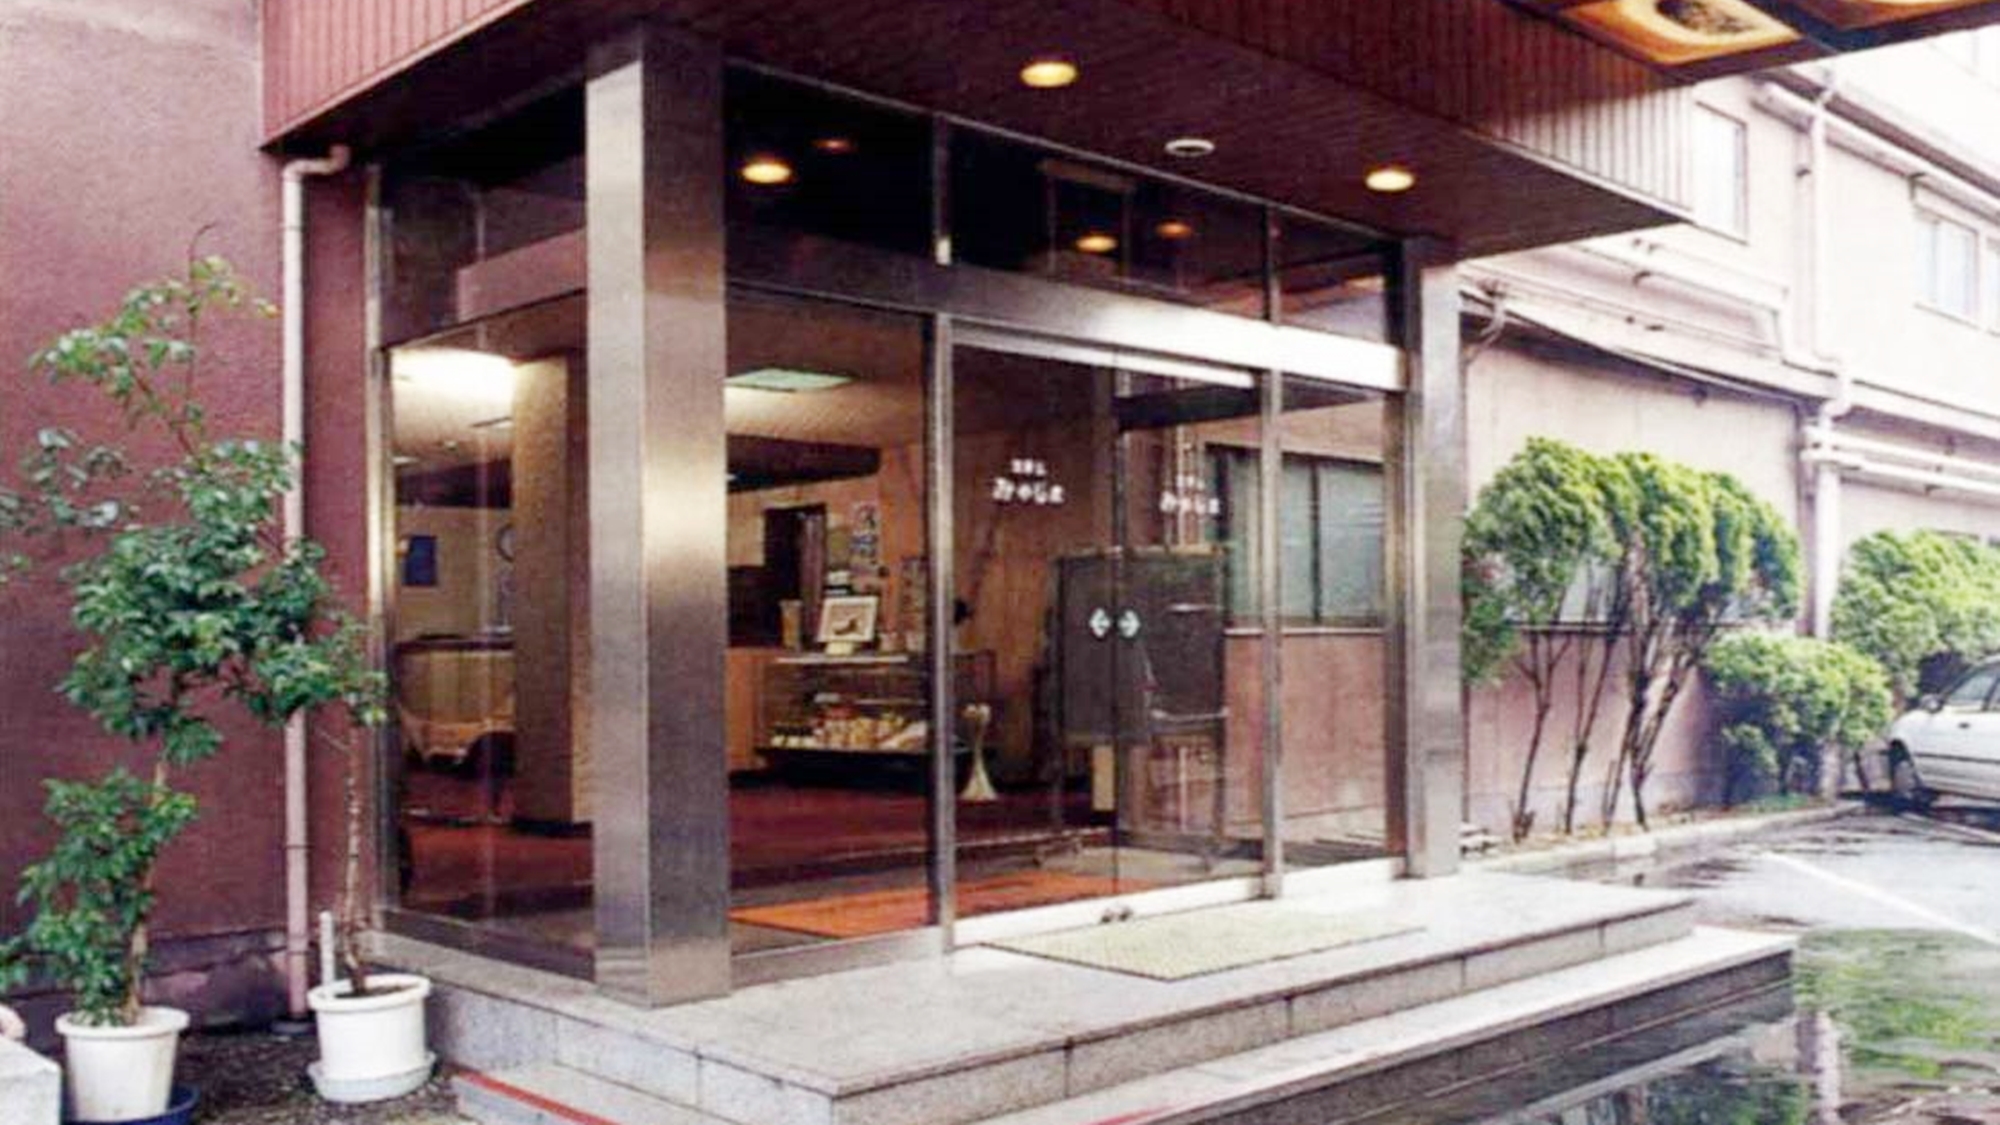 Hotel Miyajima